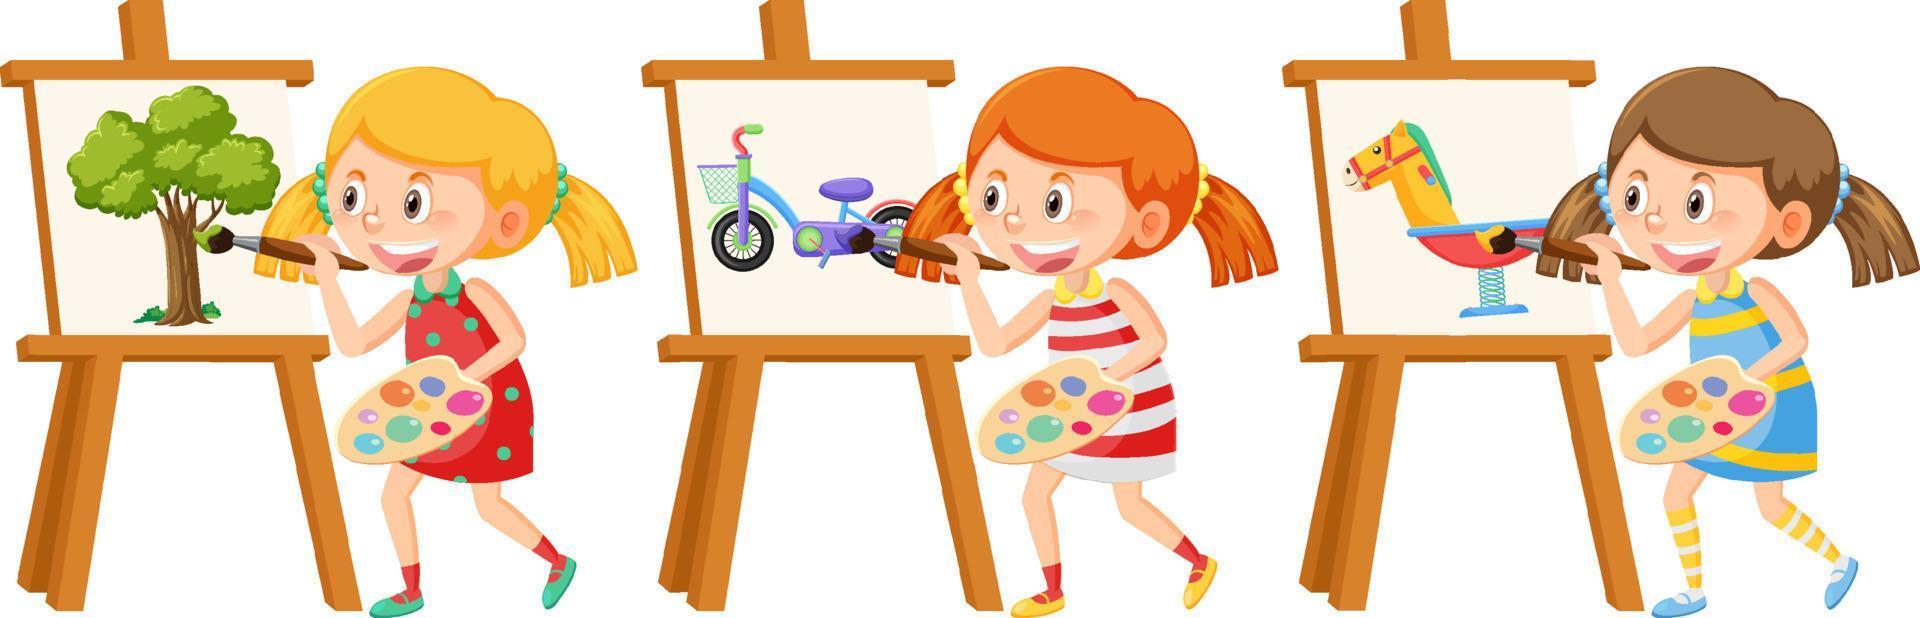 Menina artista de desenho animado pintando sobre tela